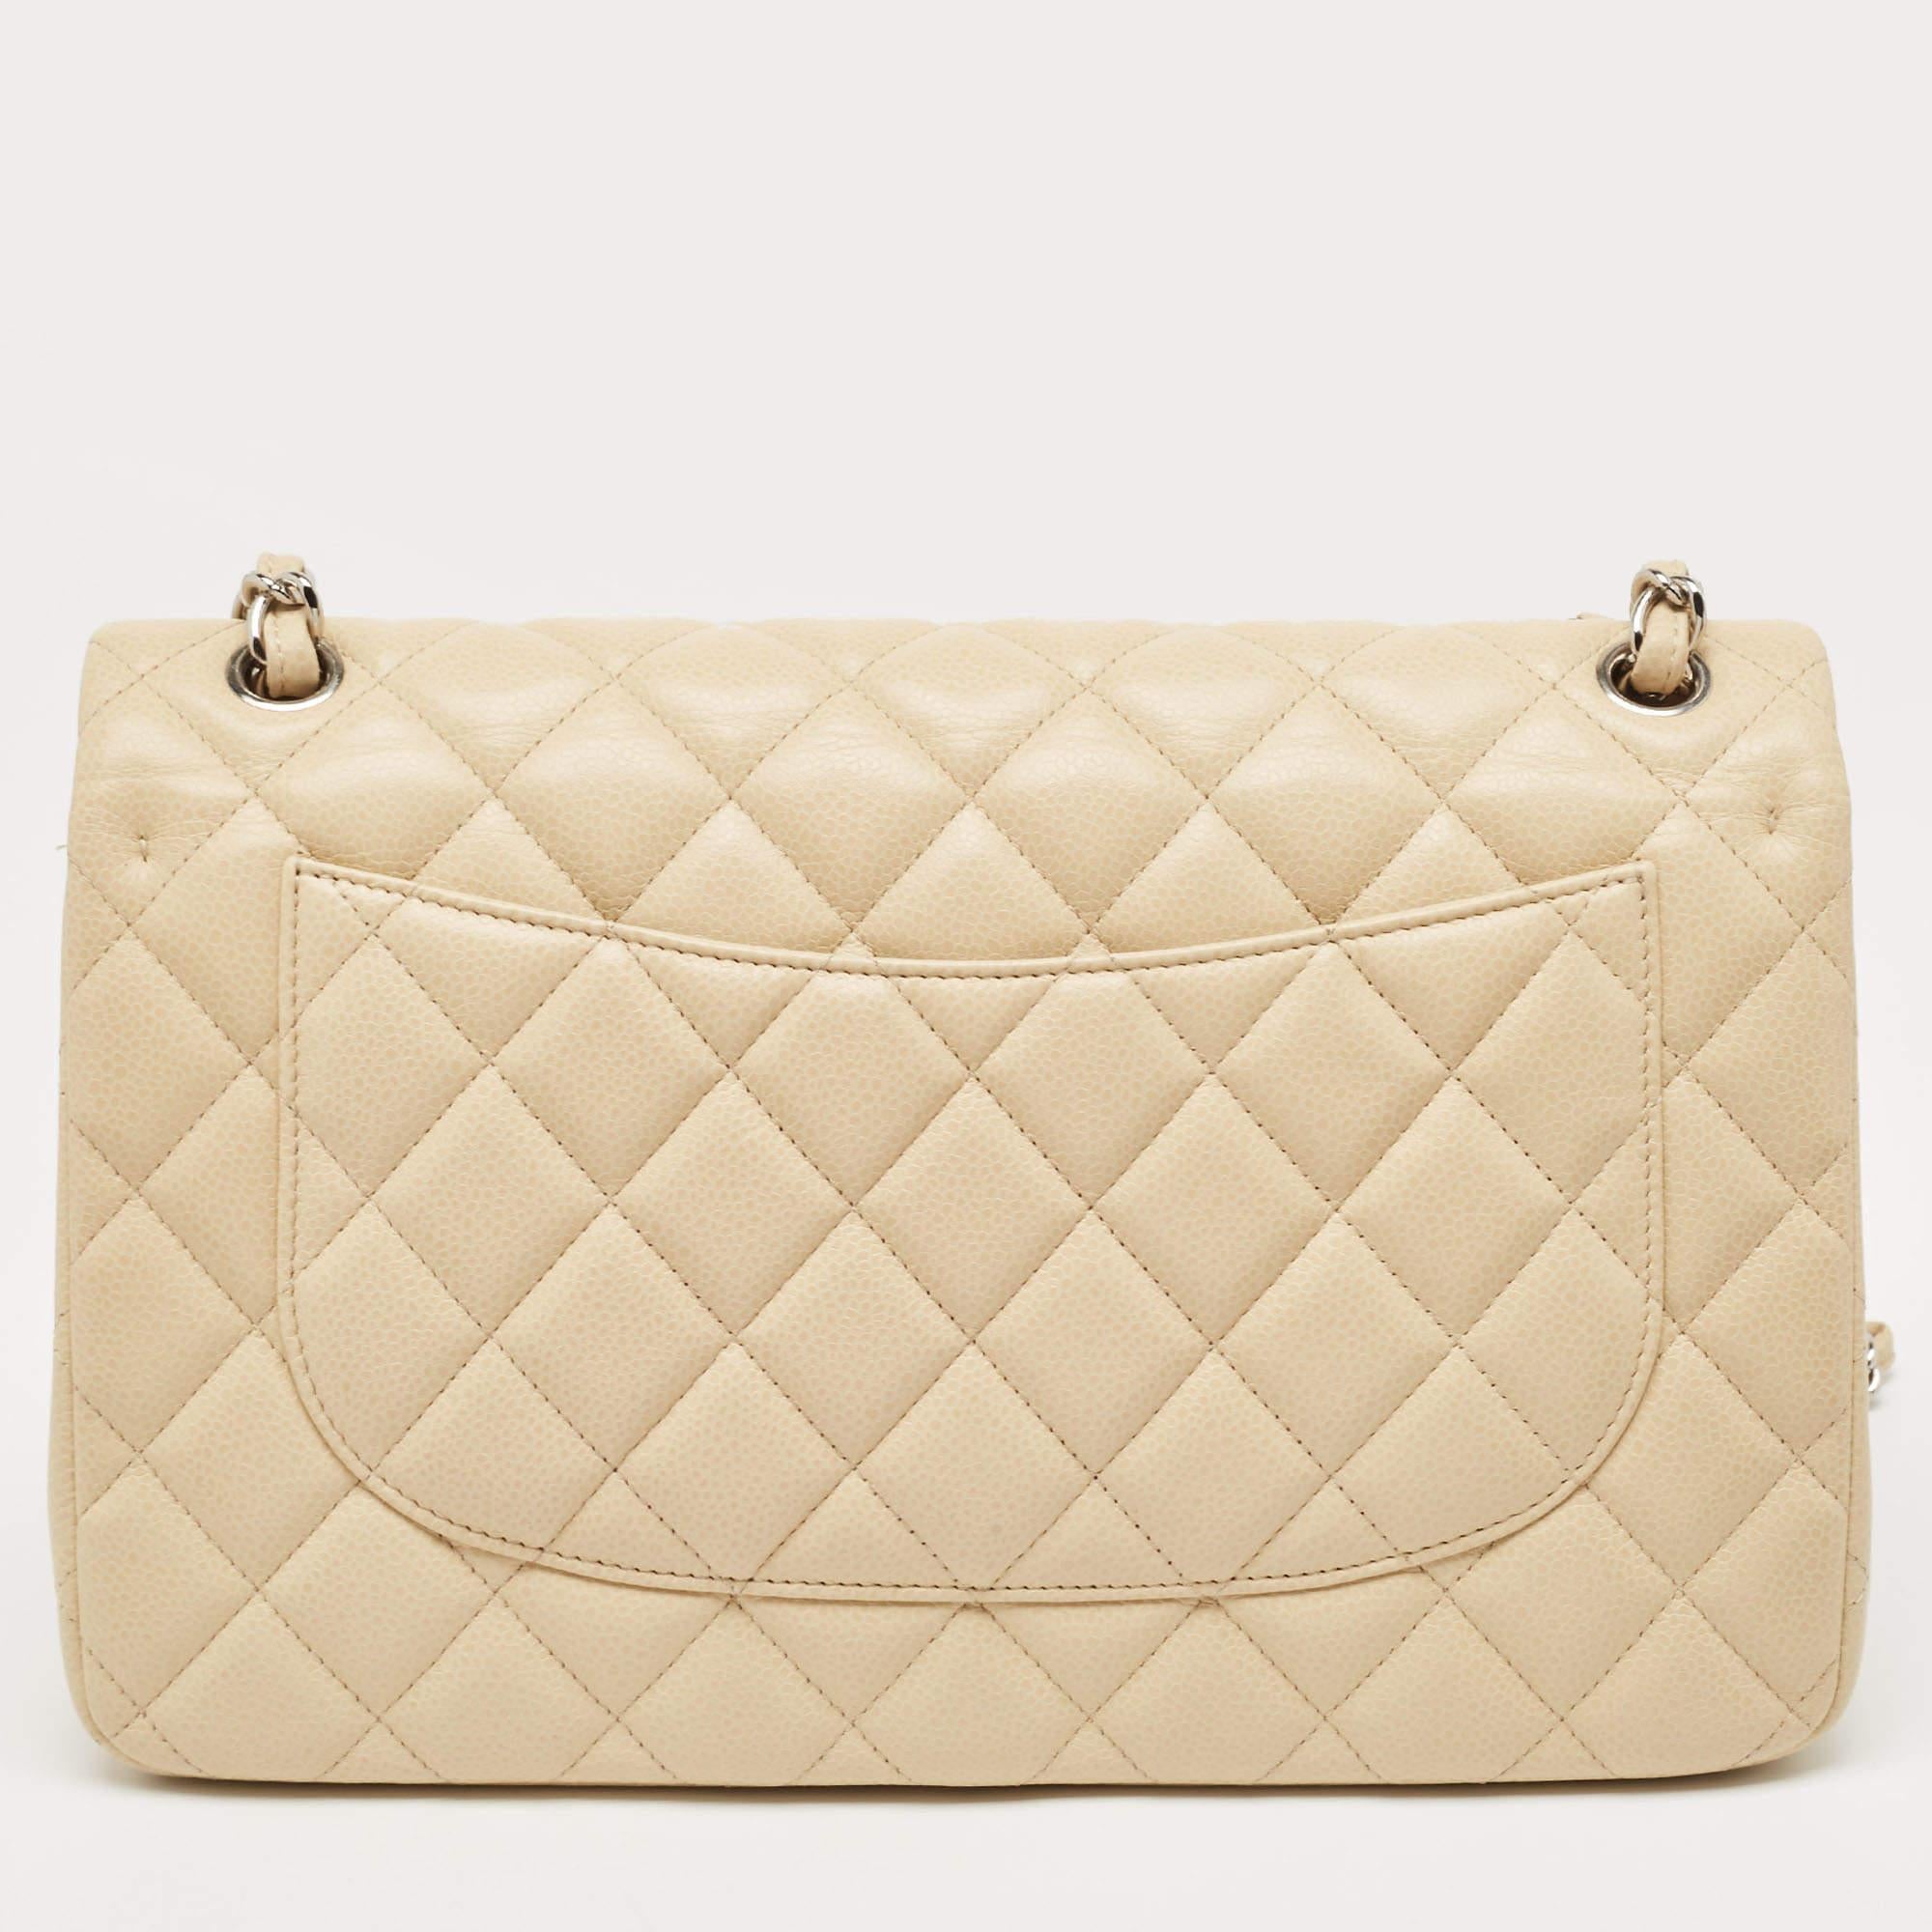 Die luxuriöse Tasche Classic Flap von Chanel ist ein Muss für eine gut sortierte Garderobe! Diese atemberaubende Tasche besteht aus meisterhaft verarbeitetem Leder mit silberfarbener Hardware und dem kultigen CC-Logo auf der Vorderseite. Die Classic